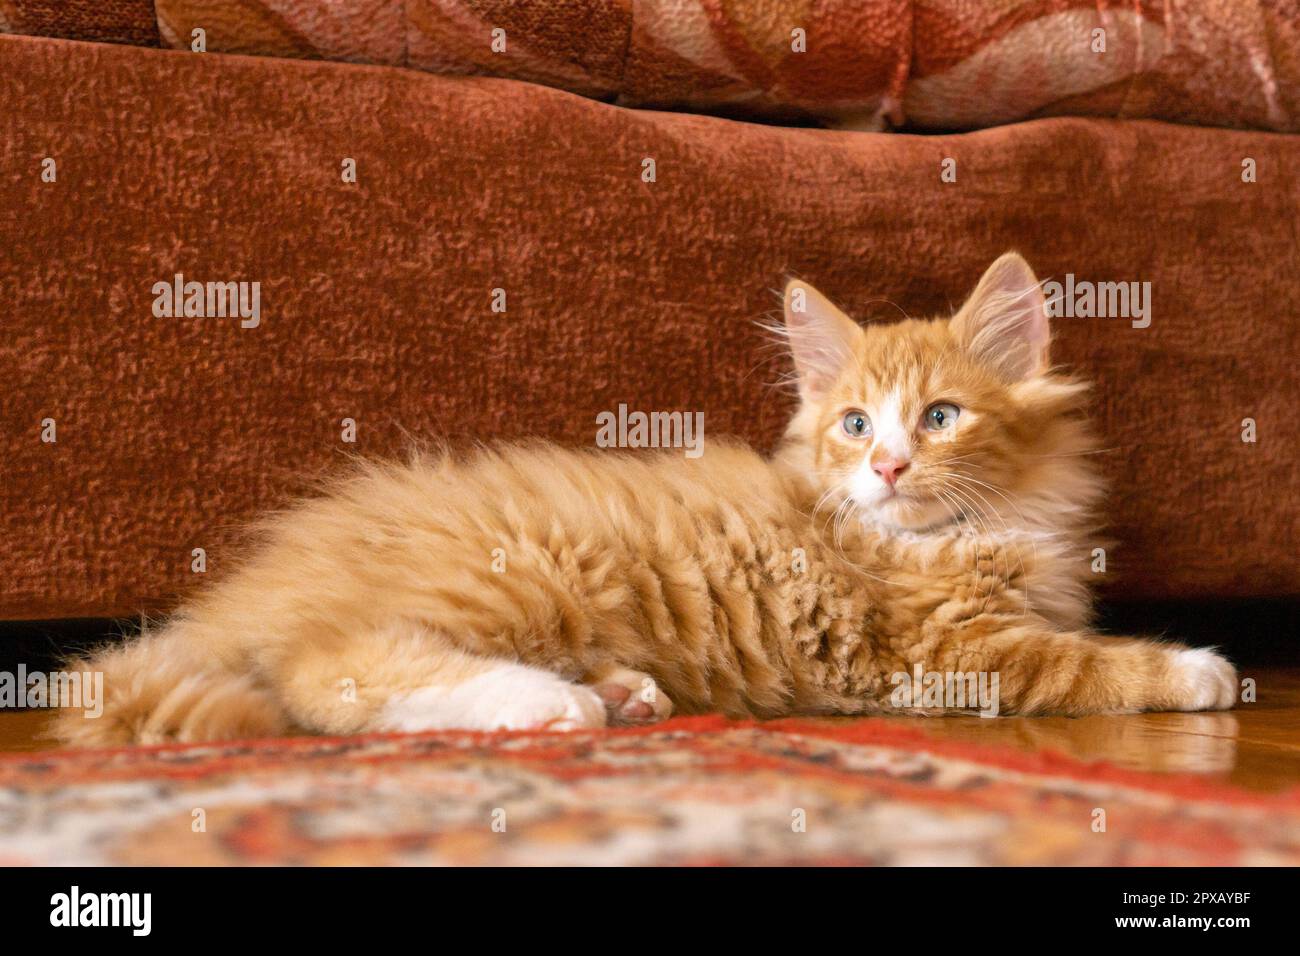 Retrato de increíble jengibre naranja mullido gato mestizo de pelo largo  gatito pussycat acostado en el piso cerca del sofá marrón en casa, posando.  Animal life, pet, pet ad Fotografía de stock -